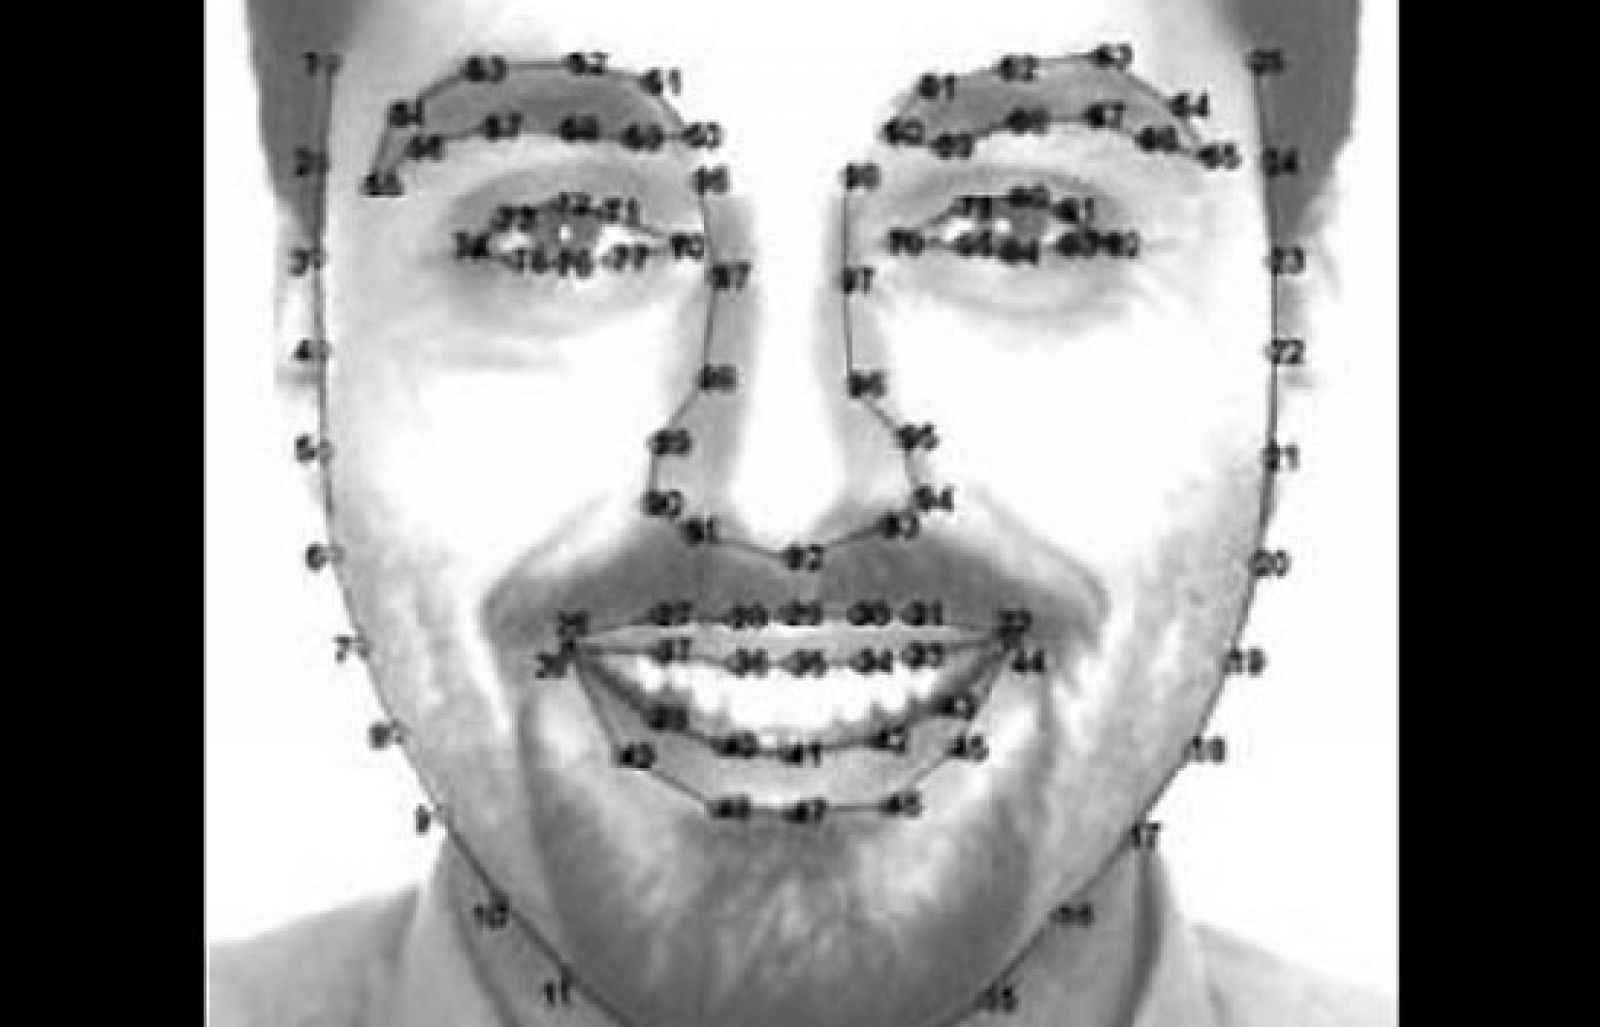 Una investigación en técnicas de biometría facial realizada por científicos de la Universidad Carlos III de Madrid ha desarrollado un sistema que reconoce un "DNI" del rostro de cada persona con las características más reseñables de su cara con una